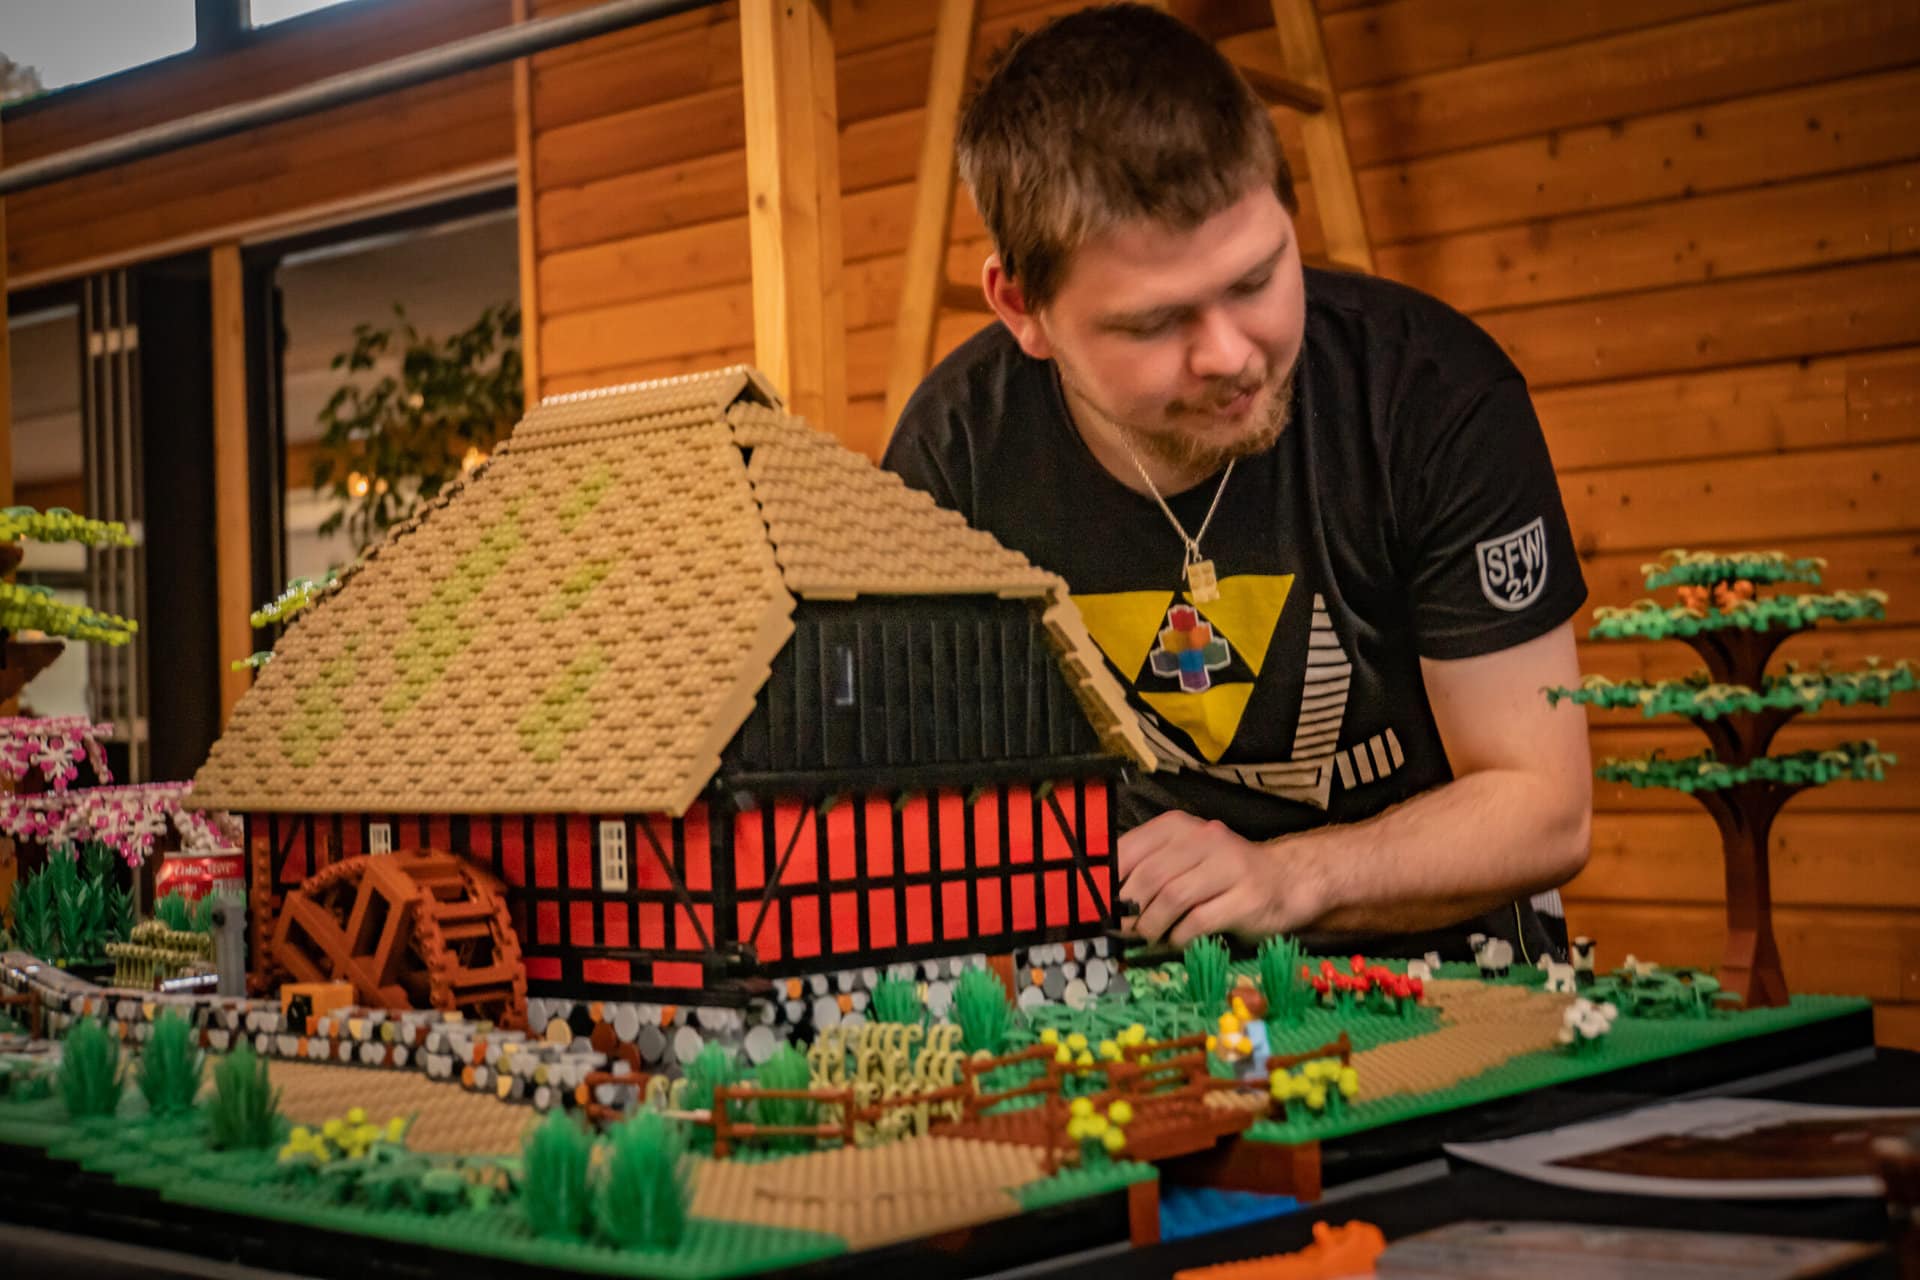 Kom til LEGO-dage på Hjerl Hede. Byg selv og se hvad de dygtige entusiaster kan bygge.